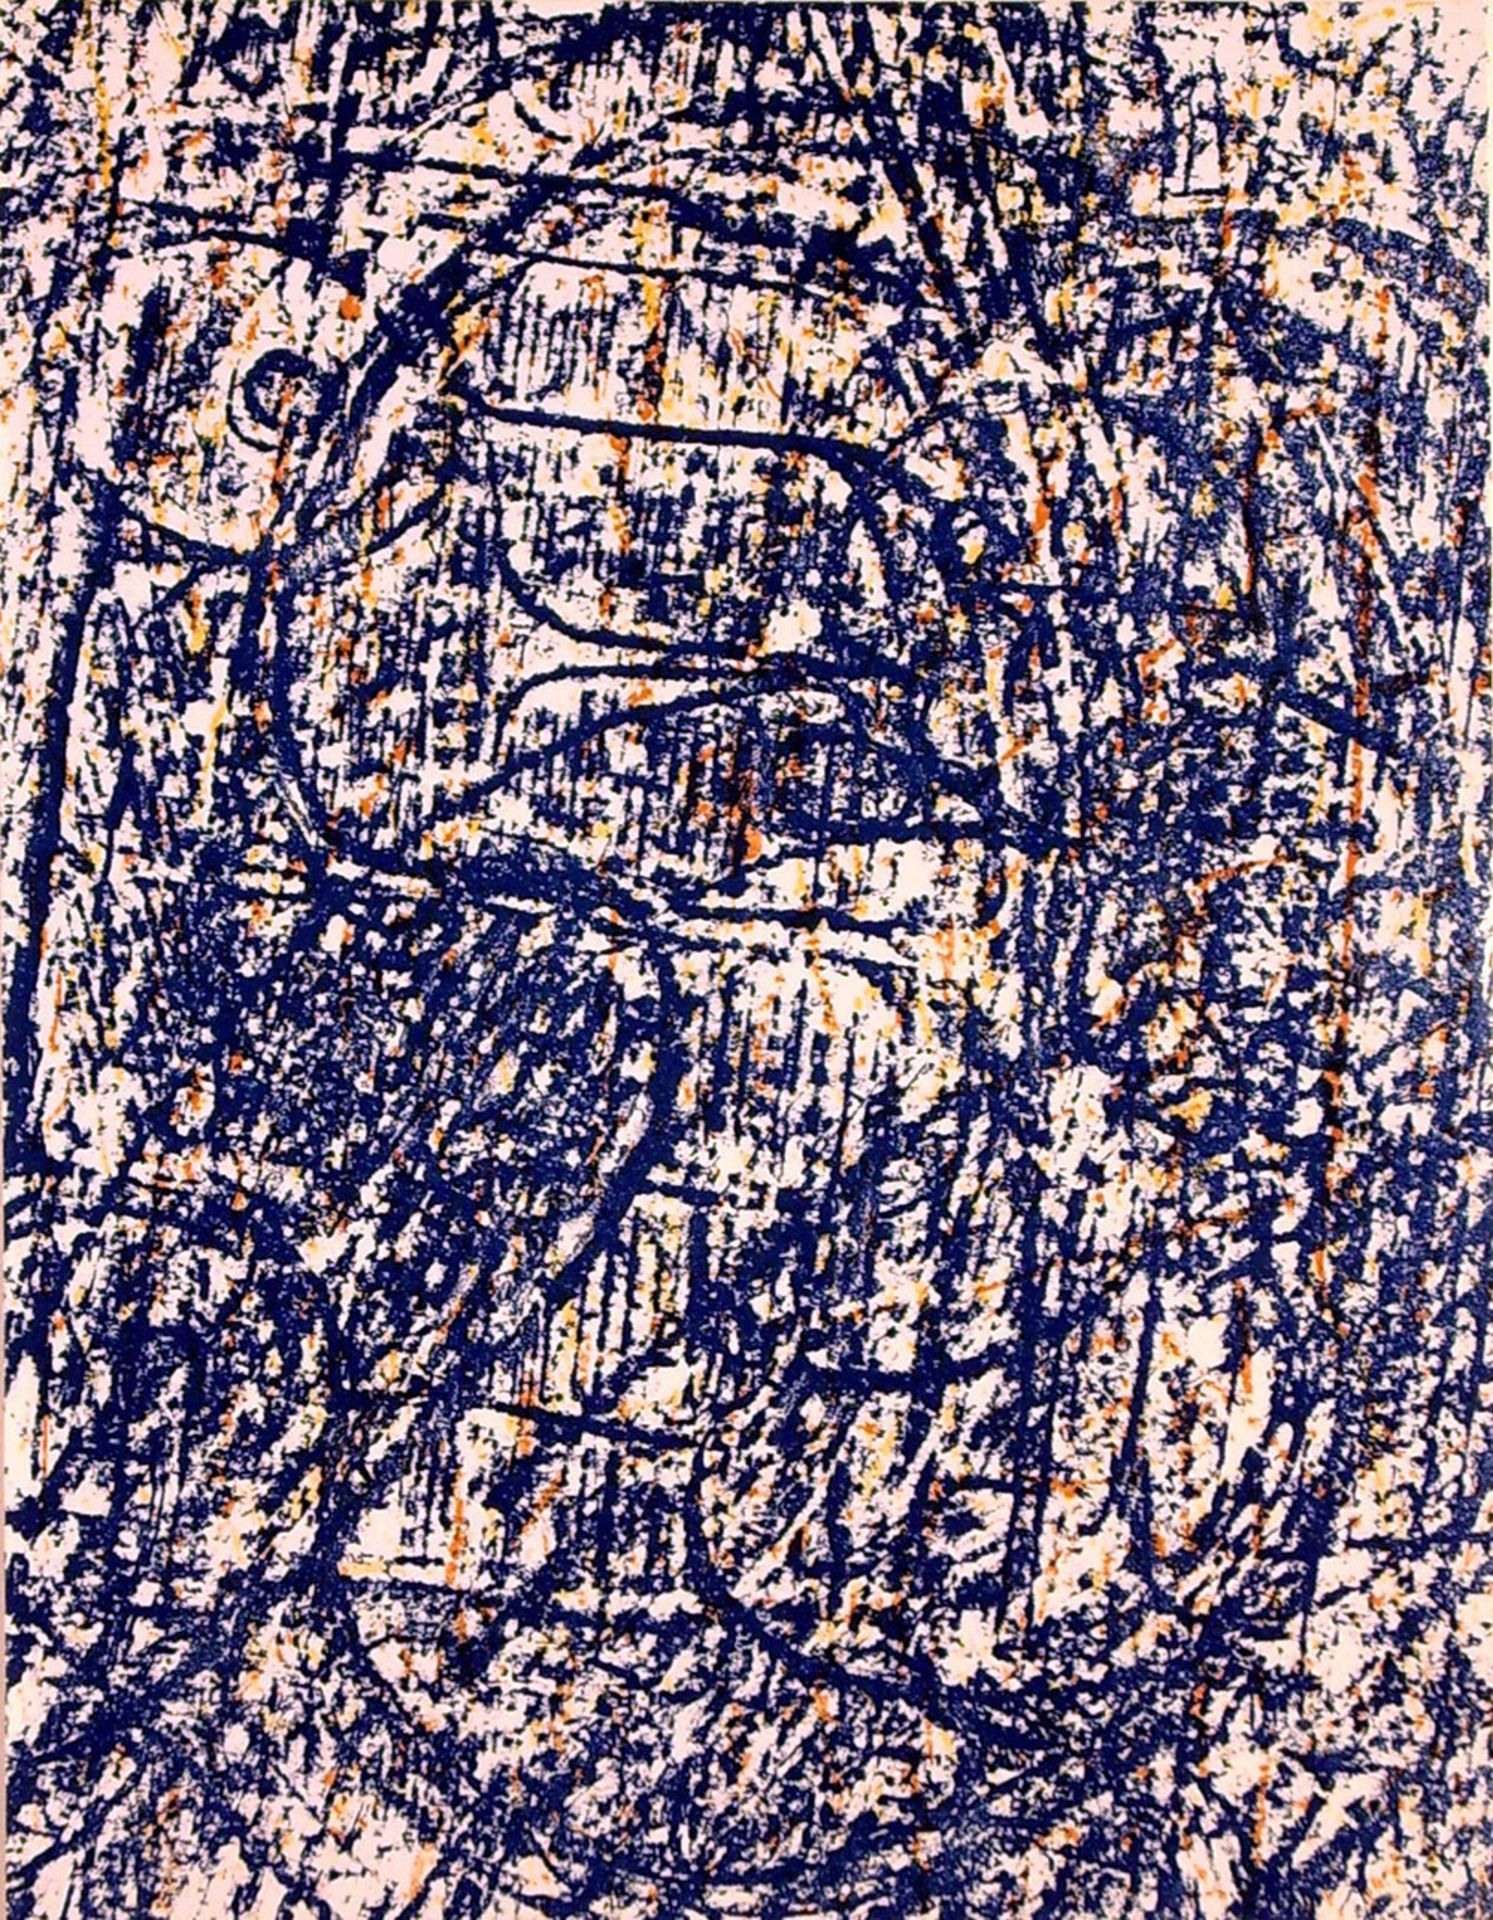 Max Ernst (1891–1976): La forét bleue (Blauer Wald) (1962)